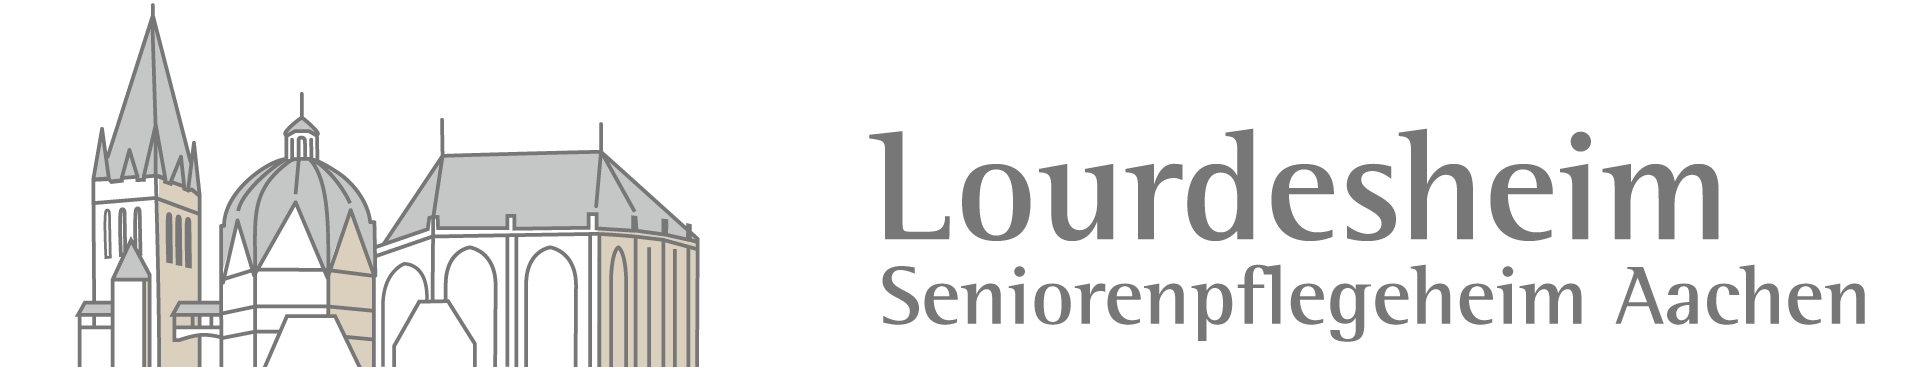 Ac Lourdesheim Seniorenpflegeheim neu